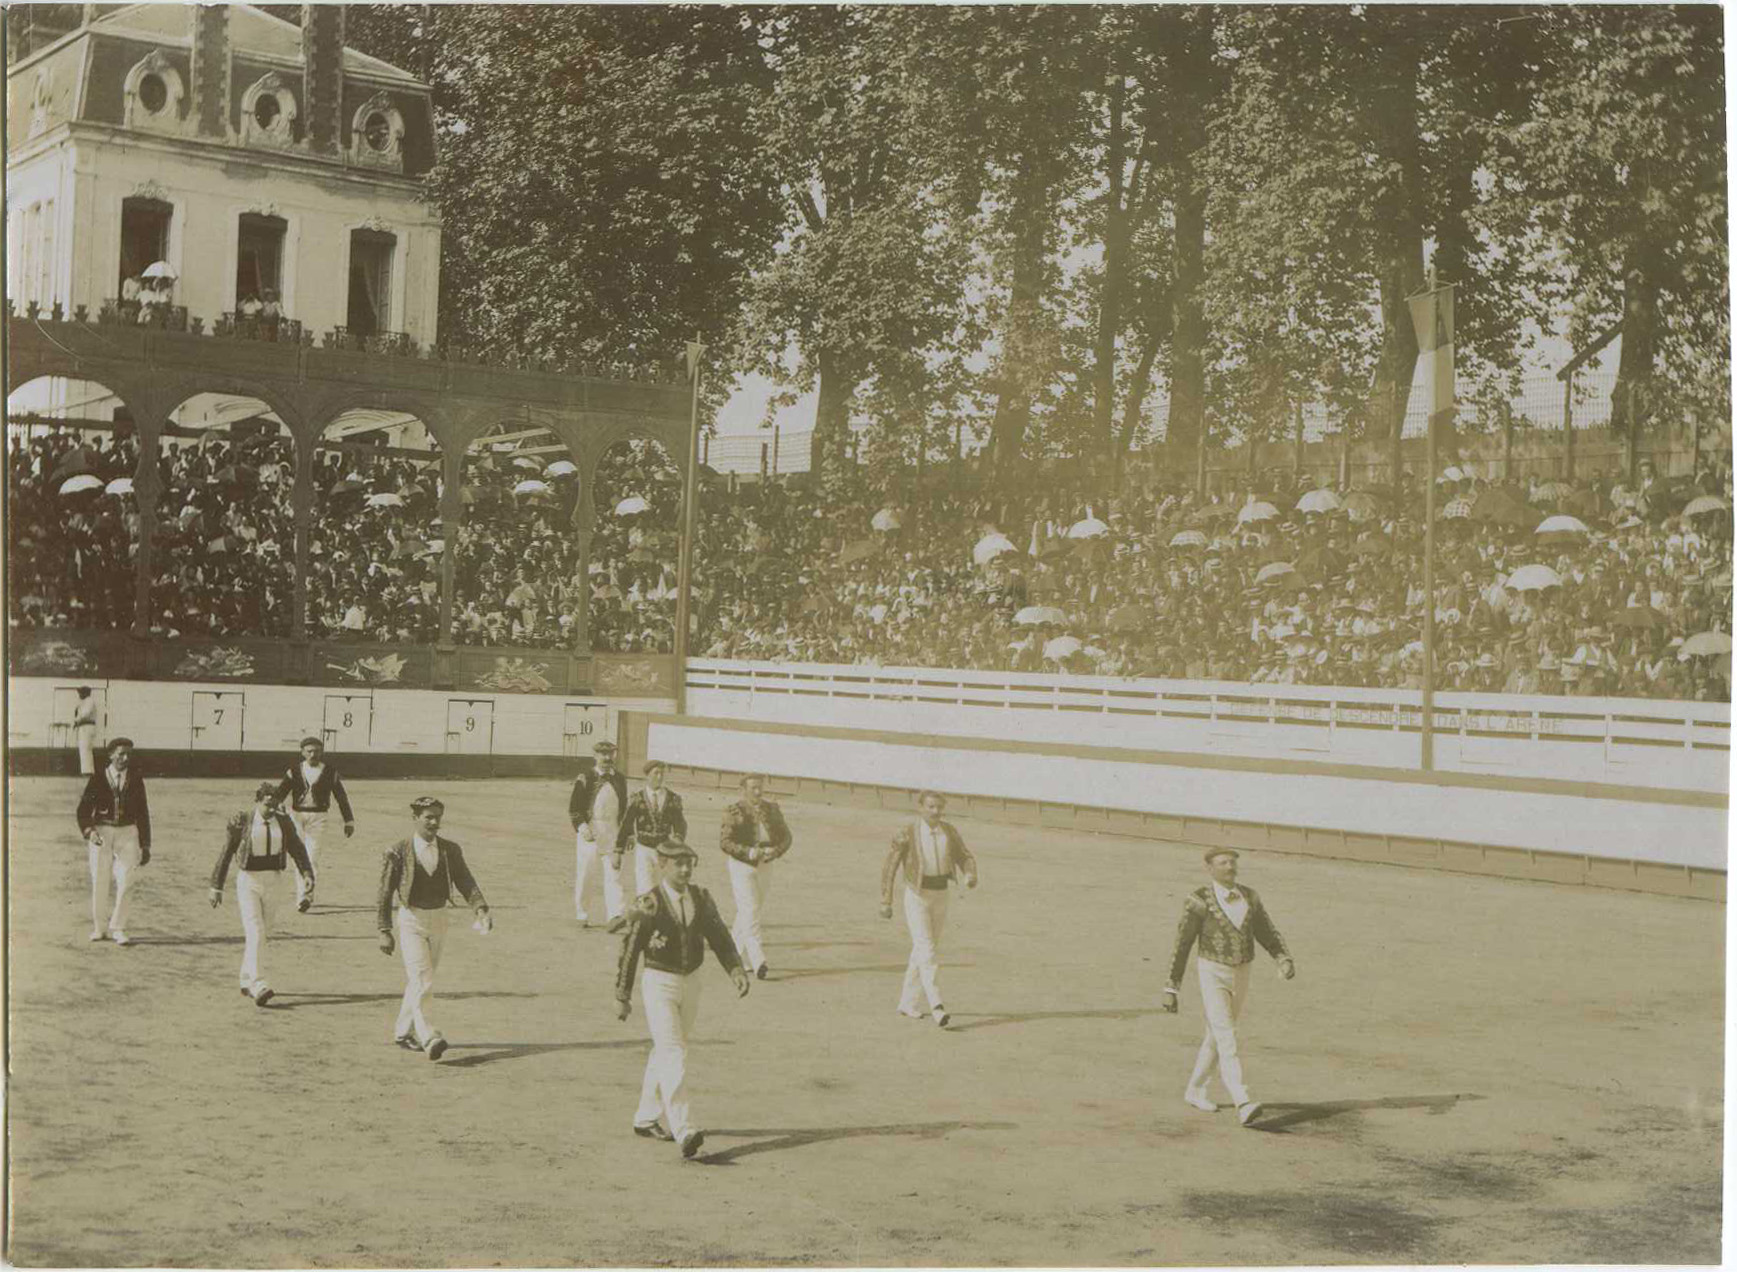 Dax - Photo - Une course landaise dans les anciennes arènes (vers 1910)